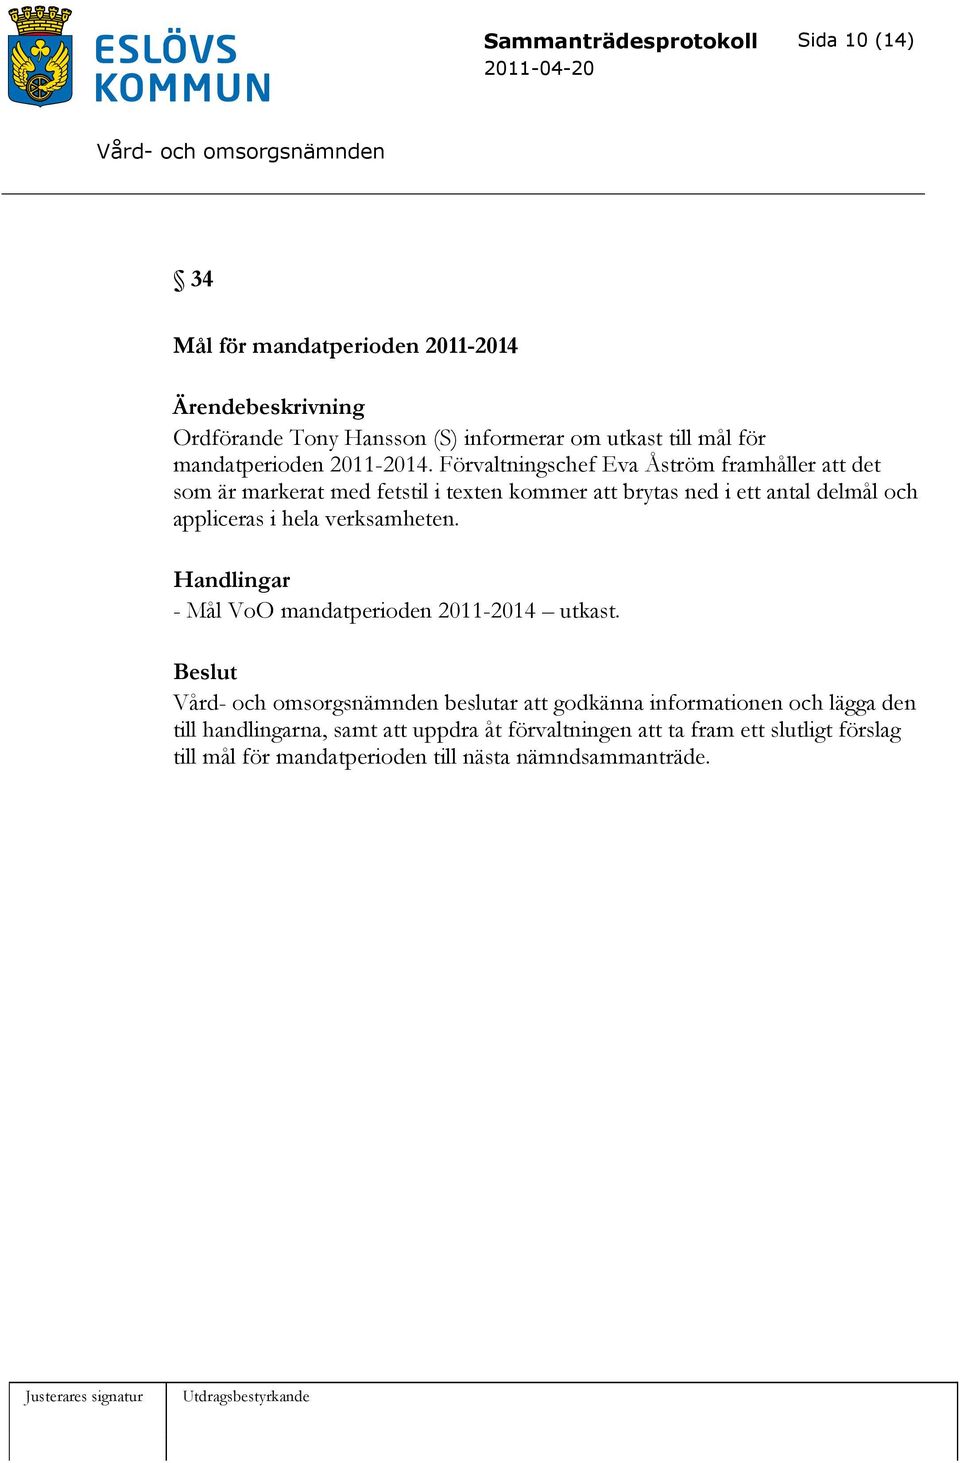 appliceras i hela verksamheten. Handlingar - Mål VoO mandatperioden 2011-2014 utkast.